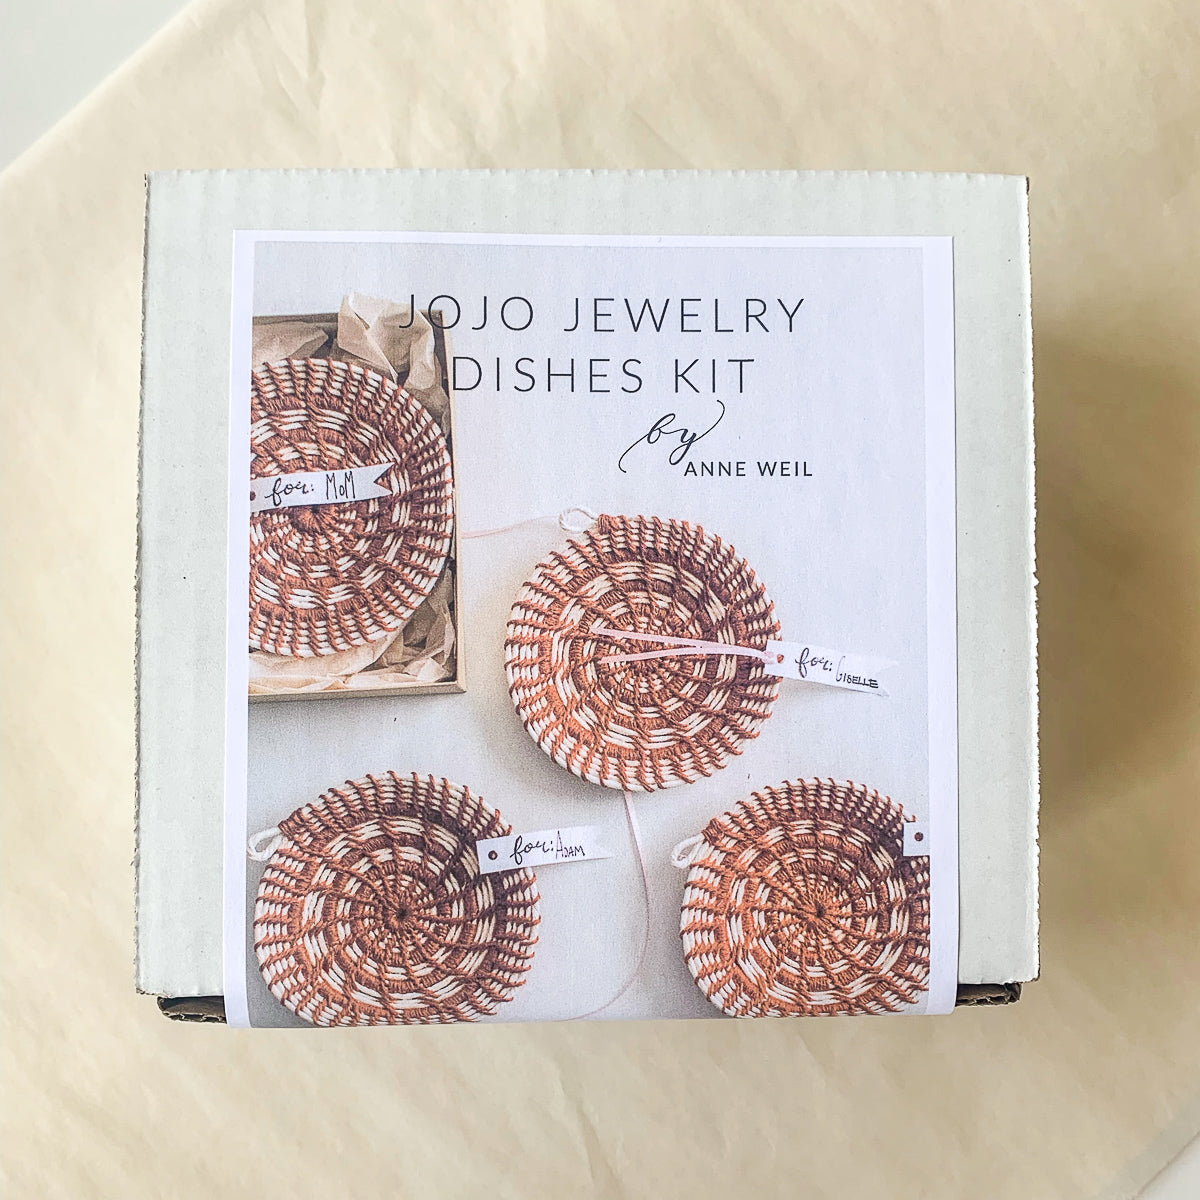 Jojo Jewelry Dishes Kit